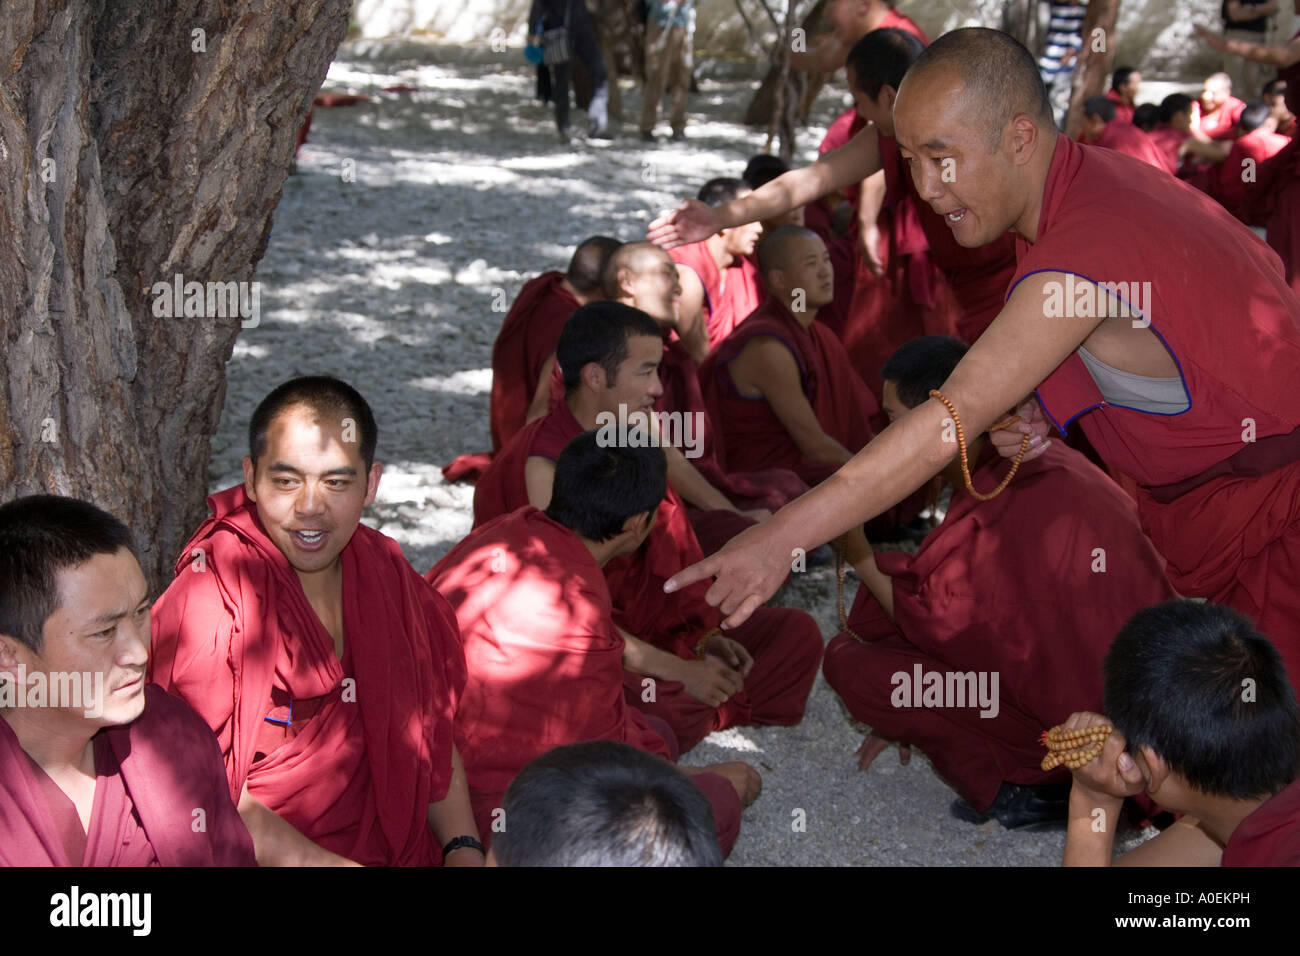 Le débat sur la masse des moines au monastère de Sera, près de Lhassa dans la région autonome du Tibet en Chine Banque D'Images